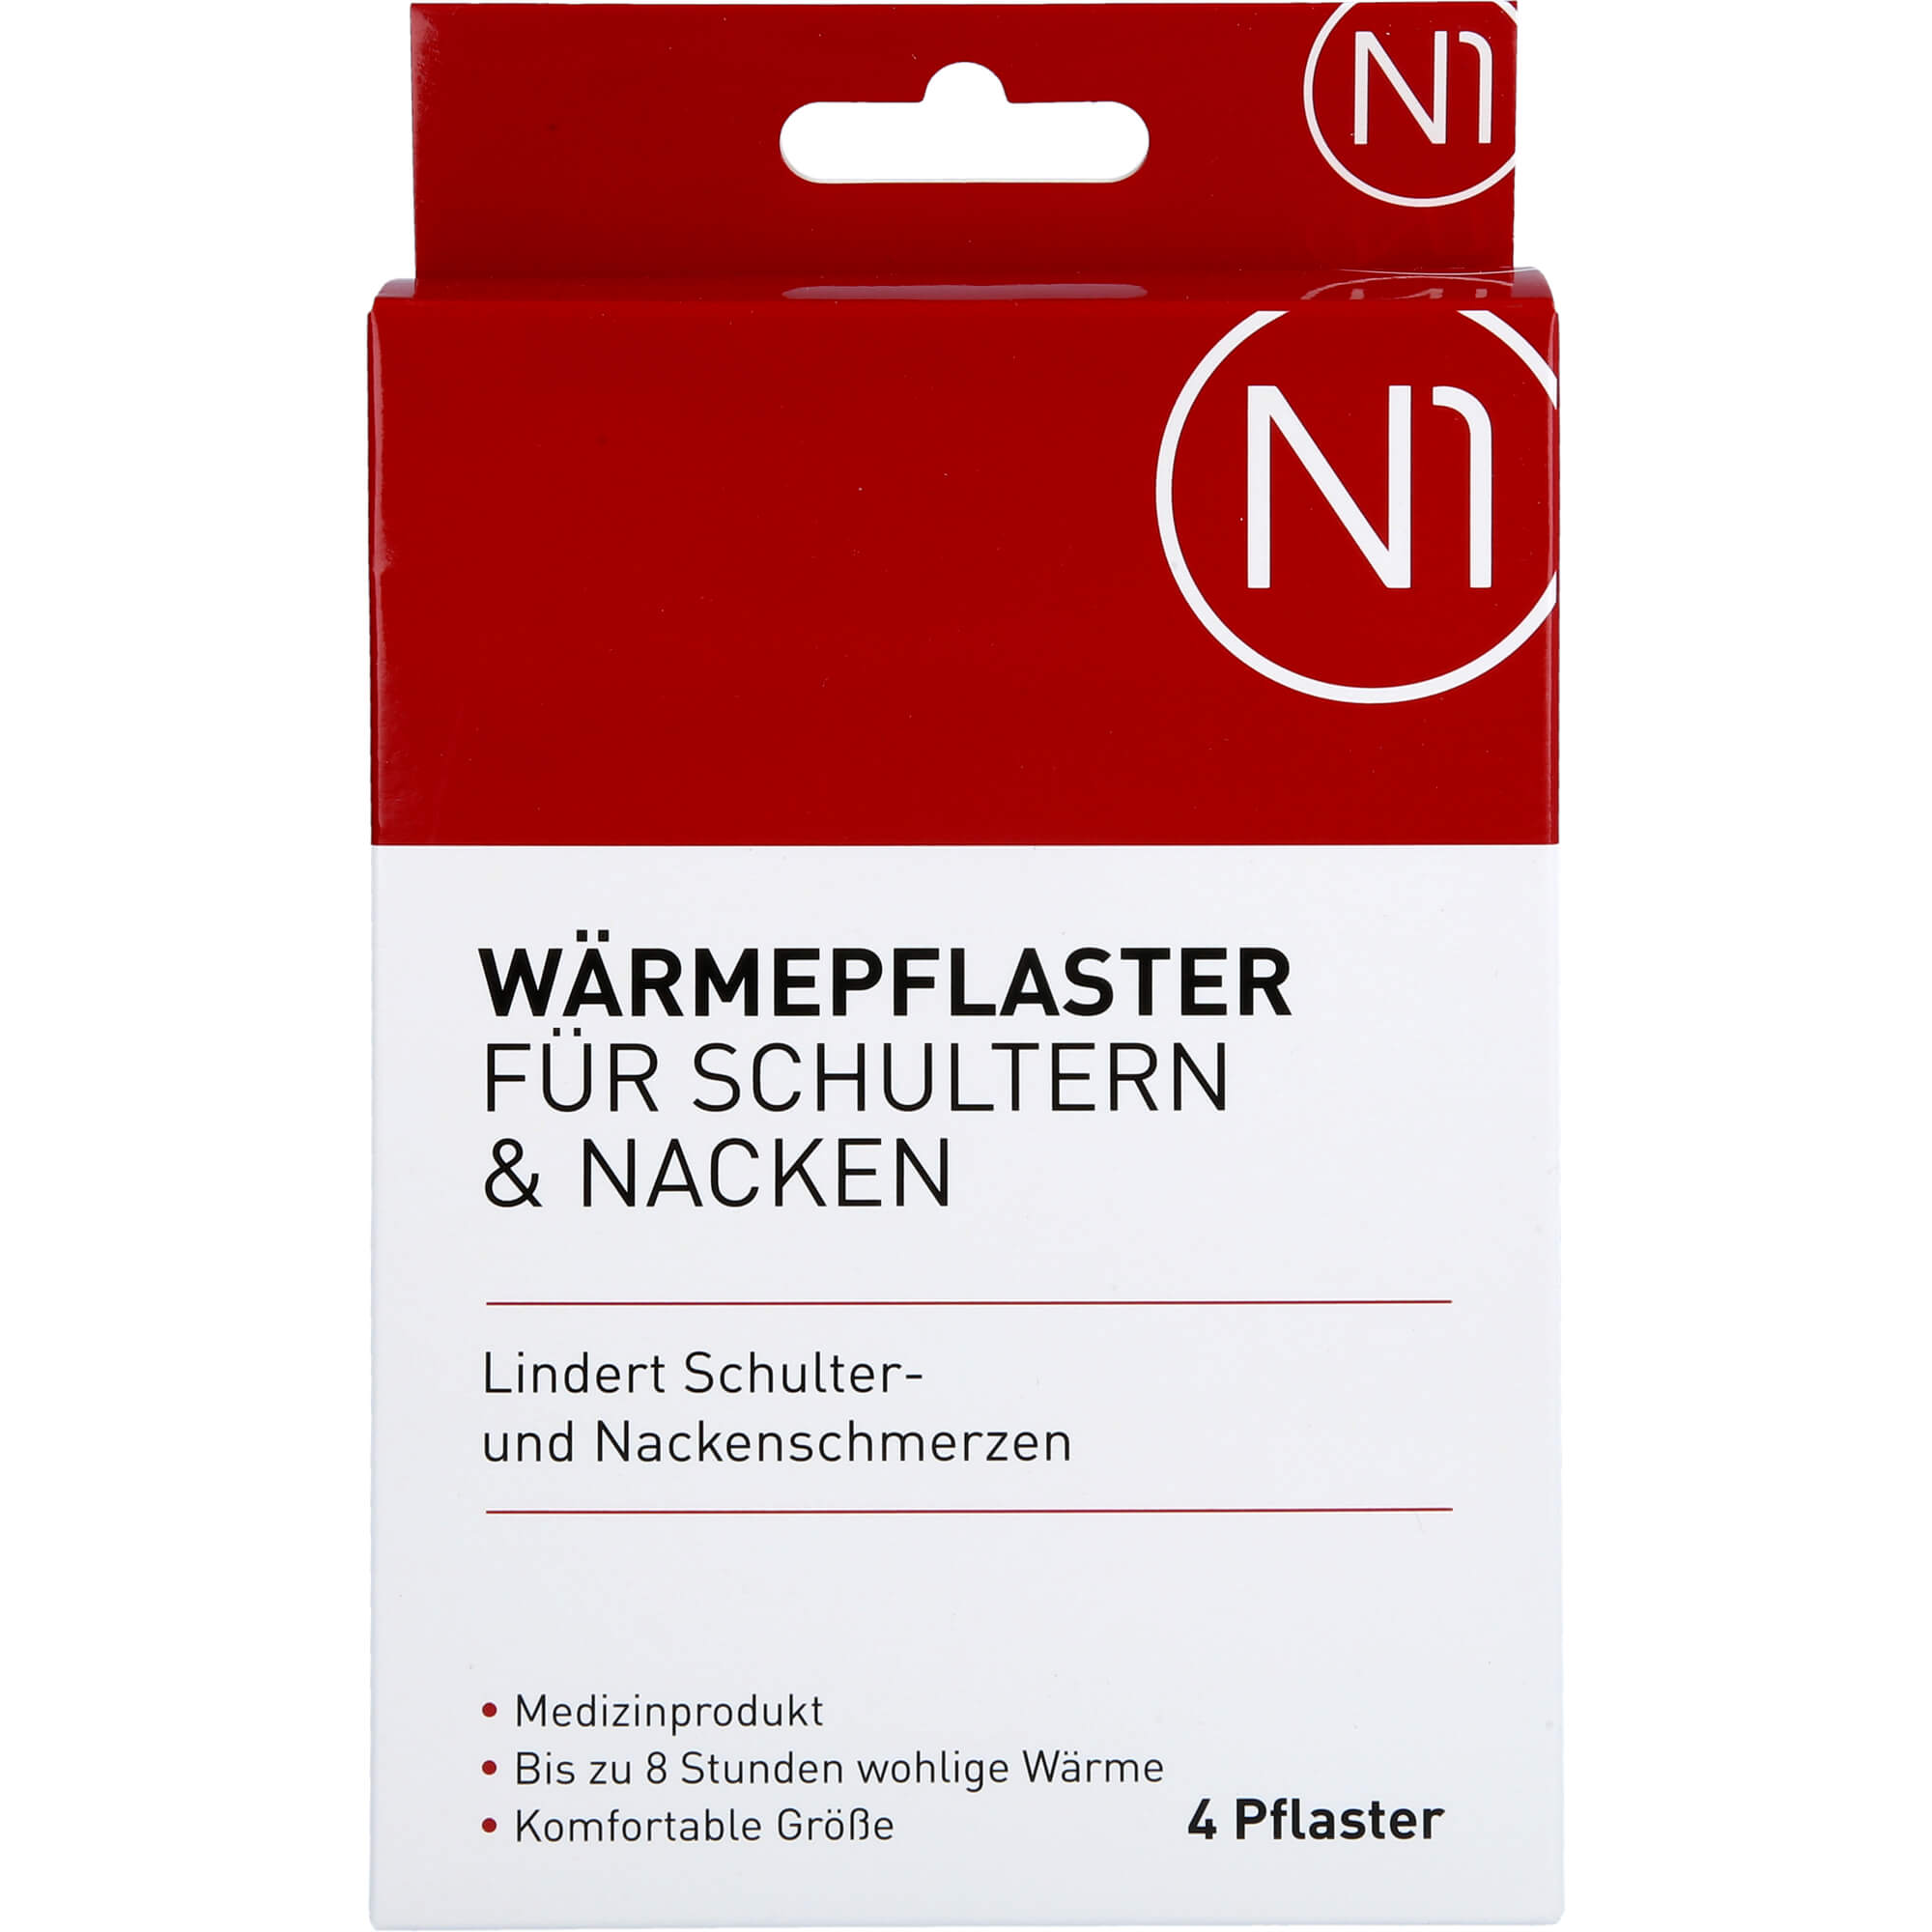 N1 Wärmepflaster für Schultern & Nacken